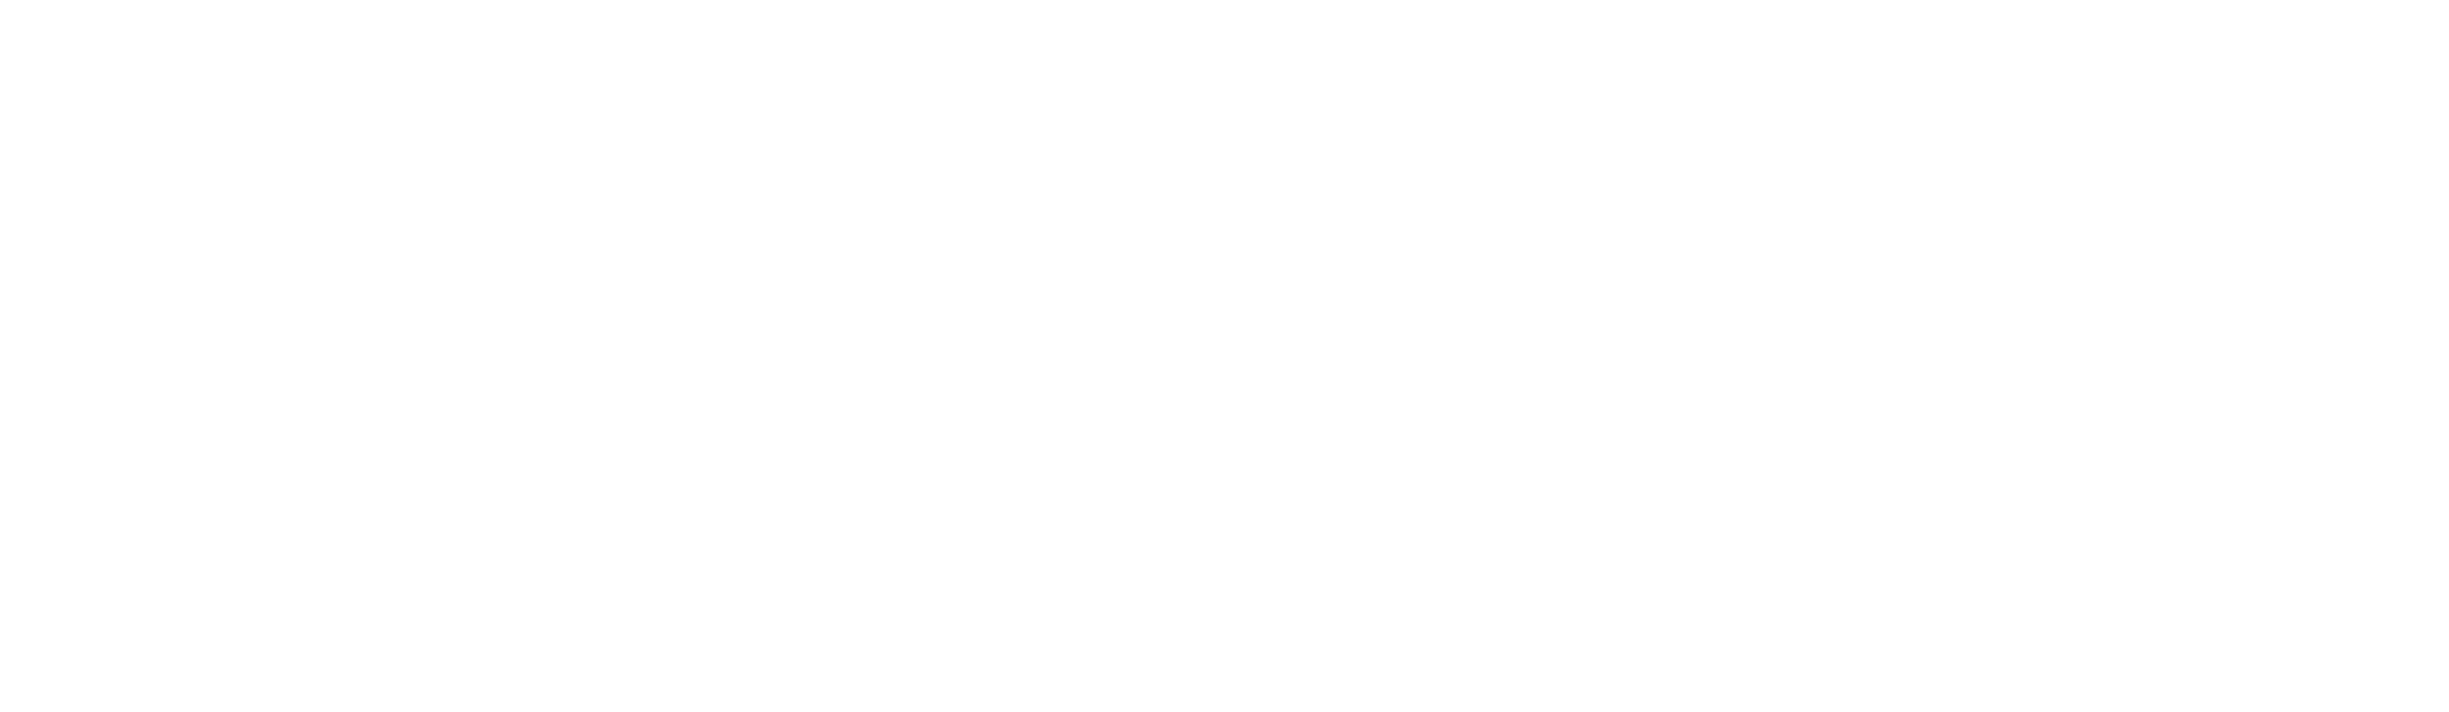 Åby Fasad Logga 2018 Sedan Vit